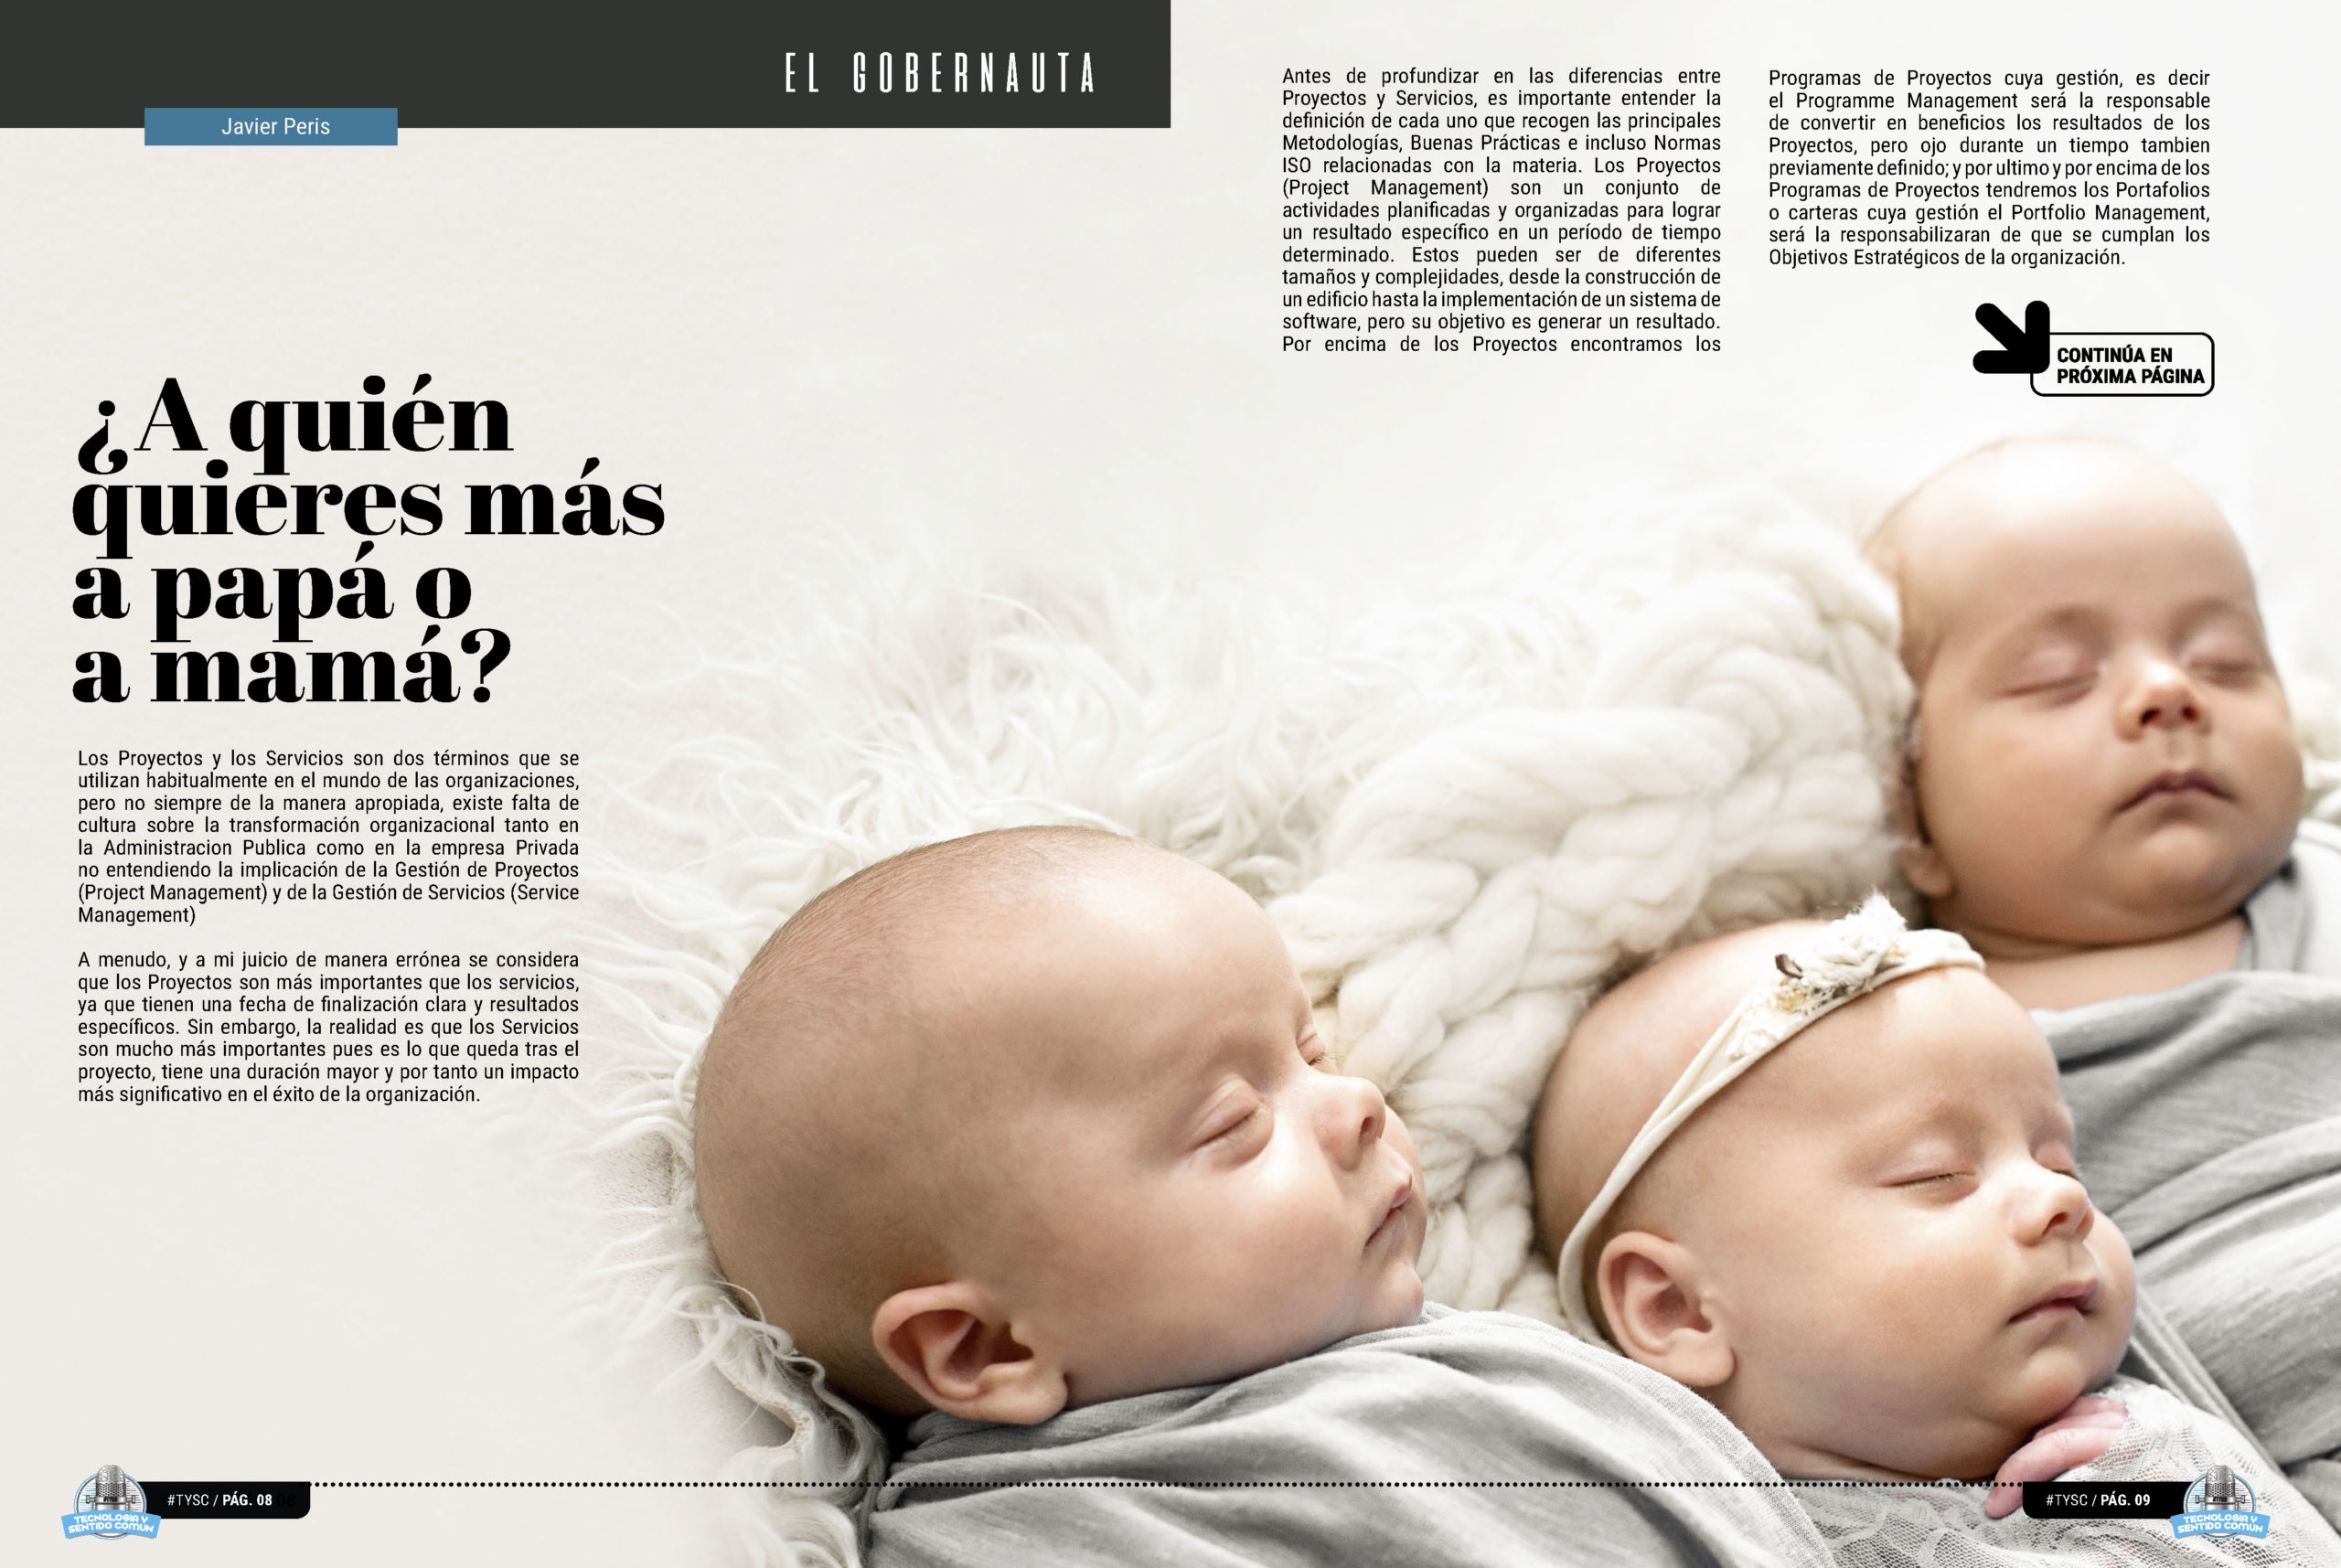 "¿A quién quieres más a papá o a mamá?" artículo de Javier Peris en la seccion "El Gobernauta" de la edición de diciembre de la Revista Mensual Tecnología y Sentido Común TYSC